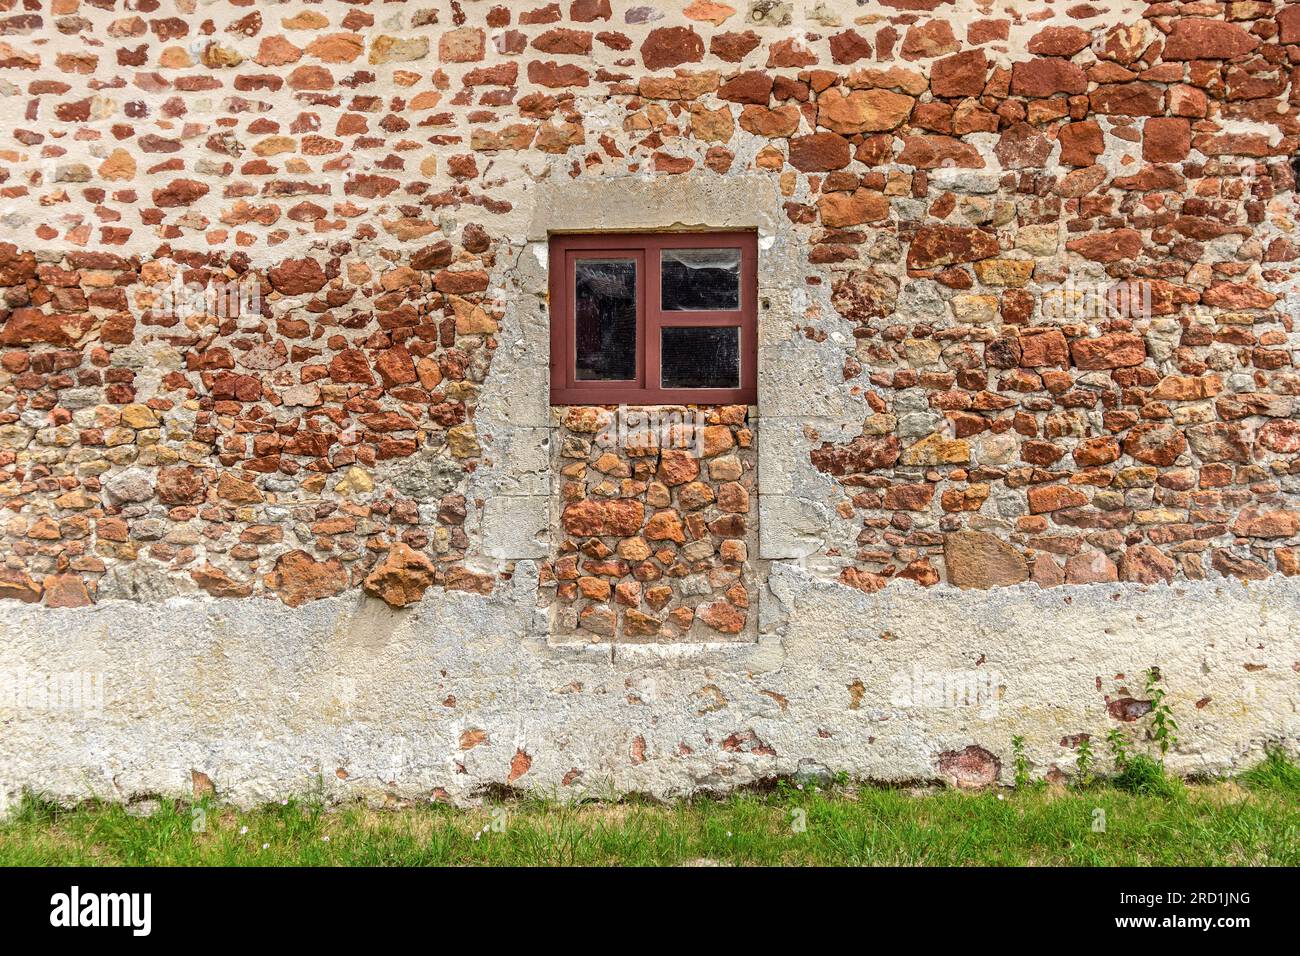 Porta bloccata dettaglio dei tradizionali materiali da costruzione in pietra rossa utilizzati per le case della Brenne - Rosnay, Brenne, Indre (36), Francia. Foto Stock